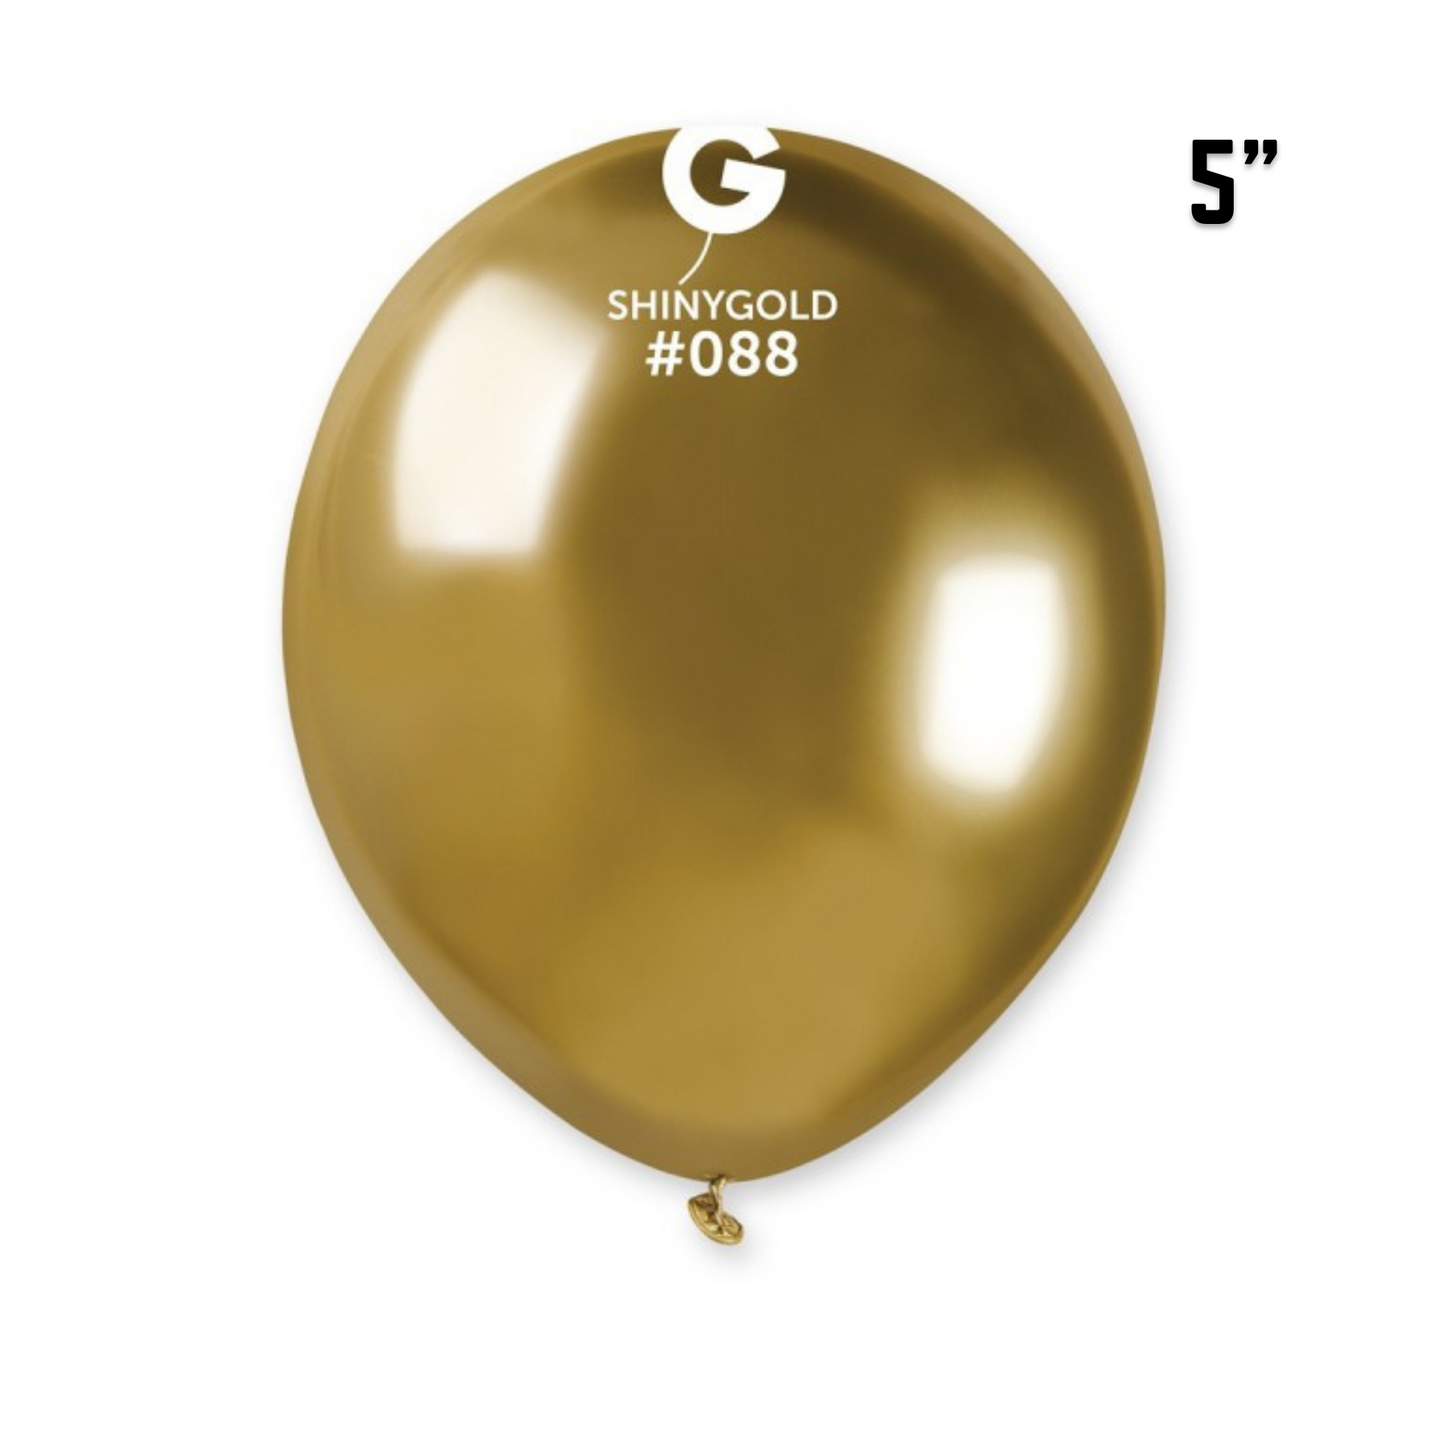 Shiny Gold Balloons